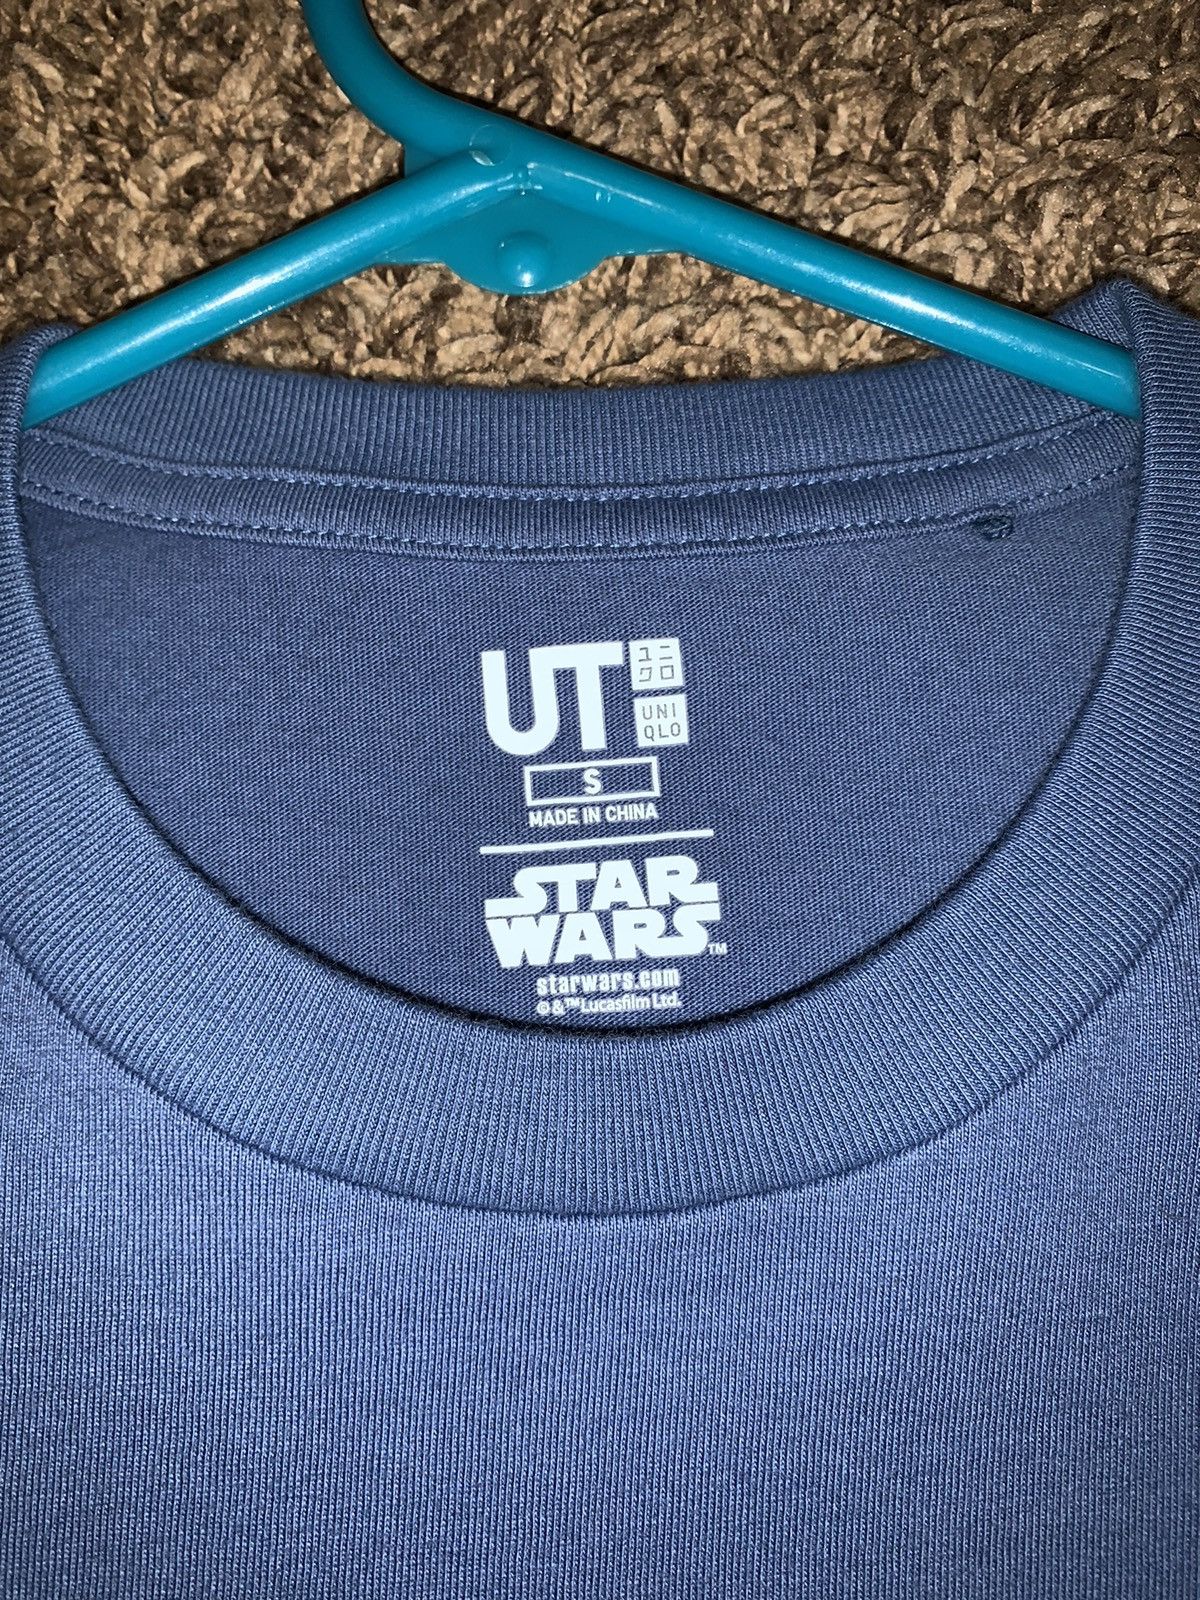 Uniqlo Uniqlo Star Wars T-Shirt Size US S / EU 44-46 / 1 - 4 Preview